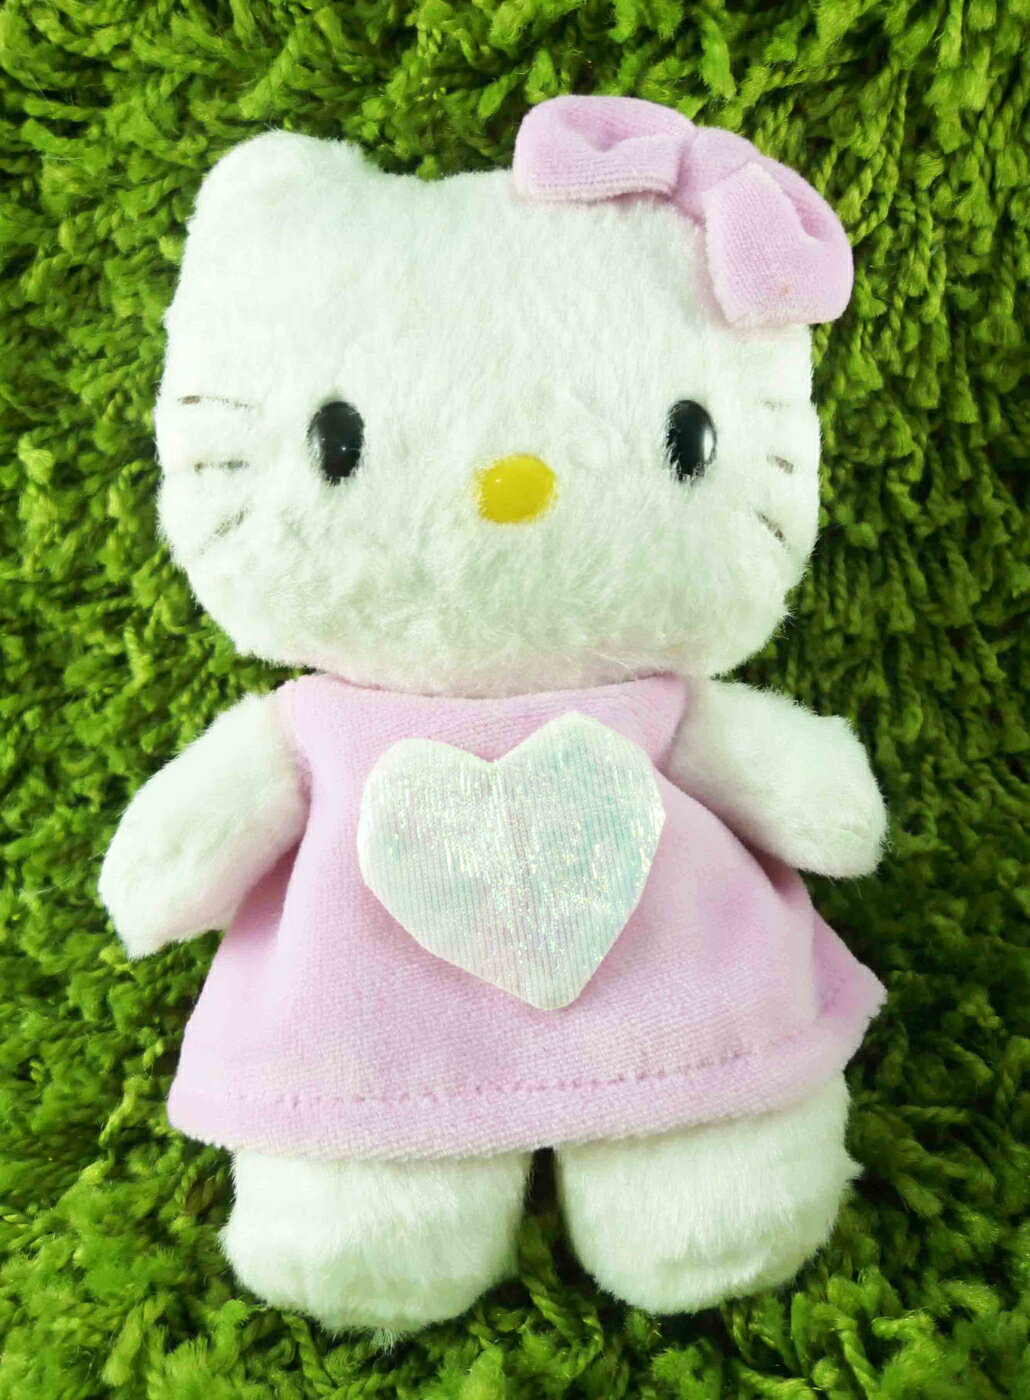 【震撼精品百貨】Hello Kitty 凱蒂貓 KITTY絨毛娃娃-粉天使 震撼日式精品百貨